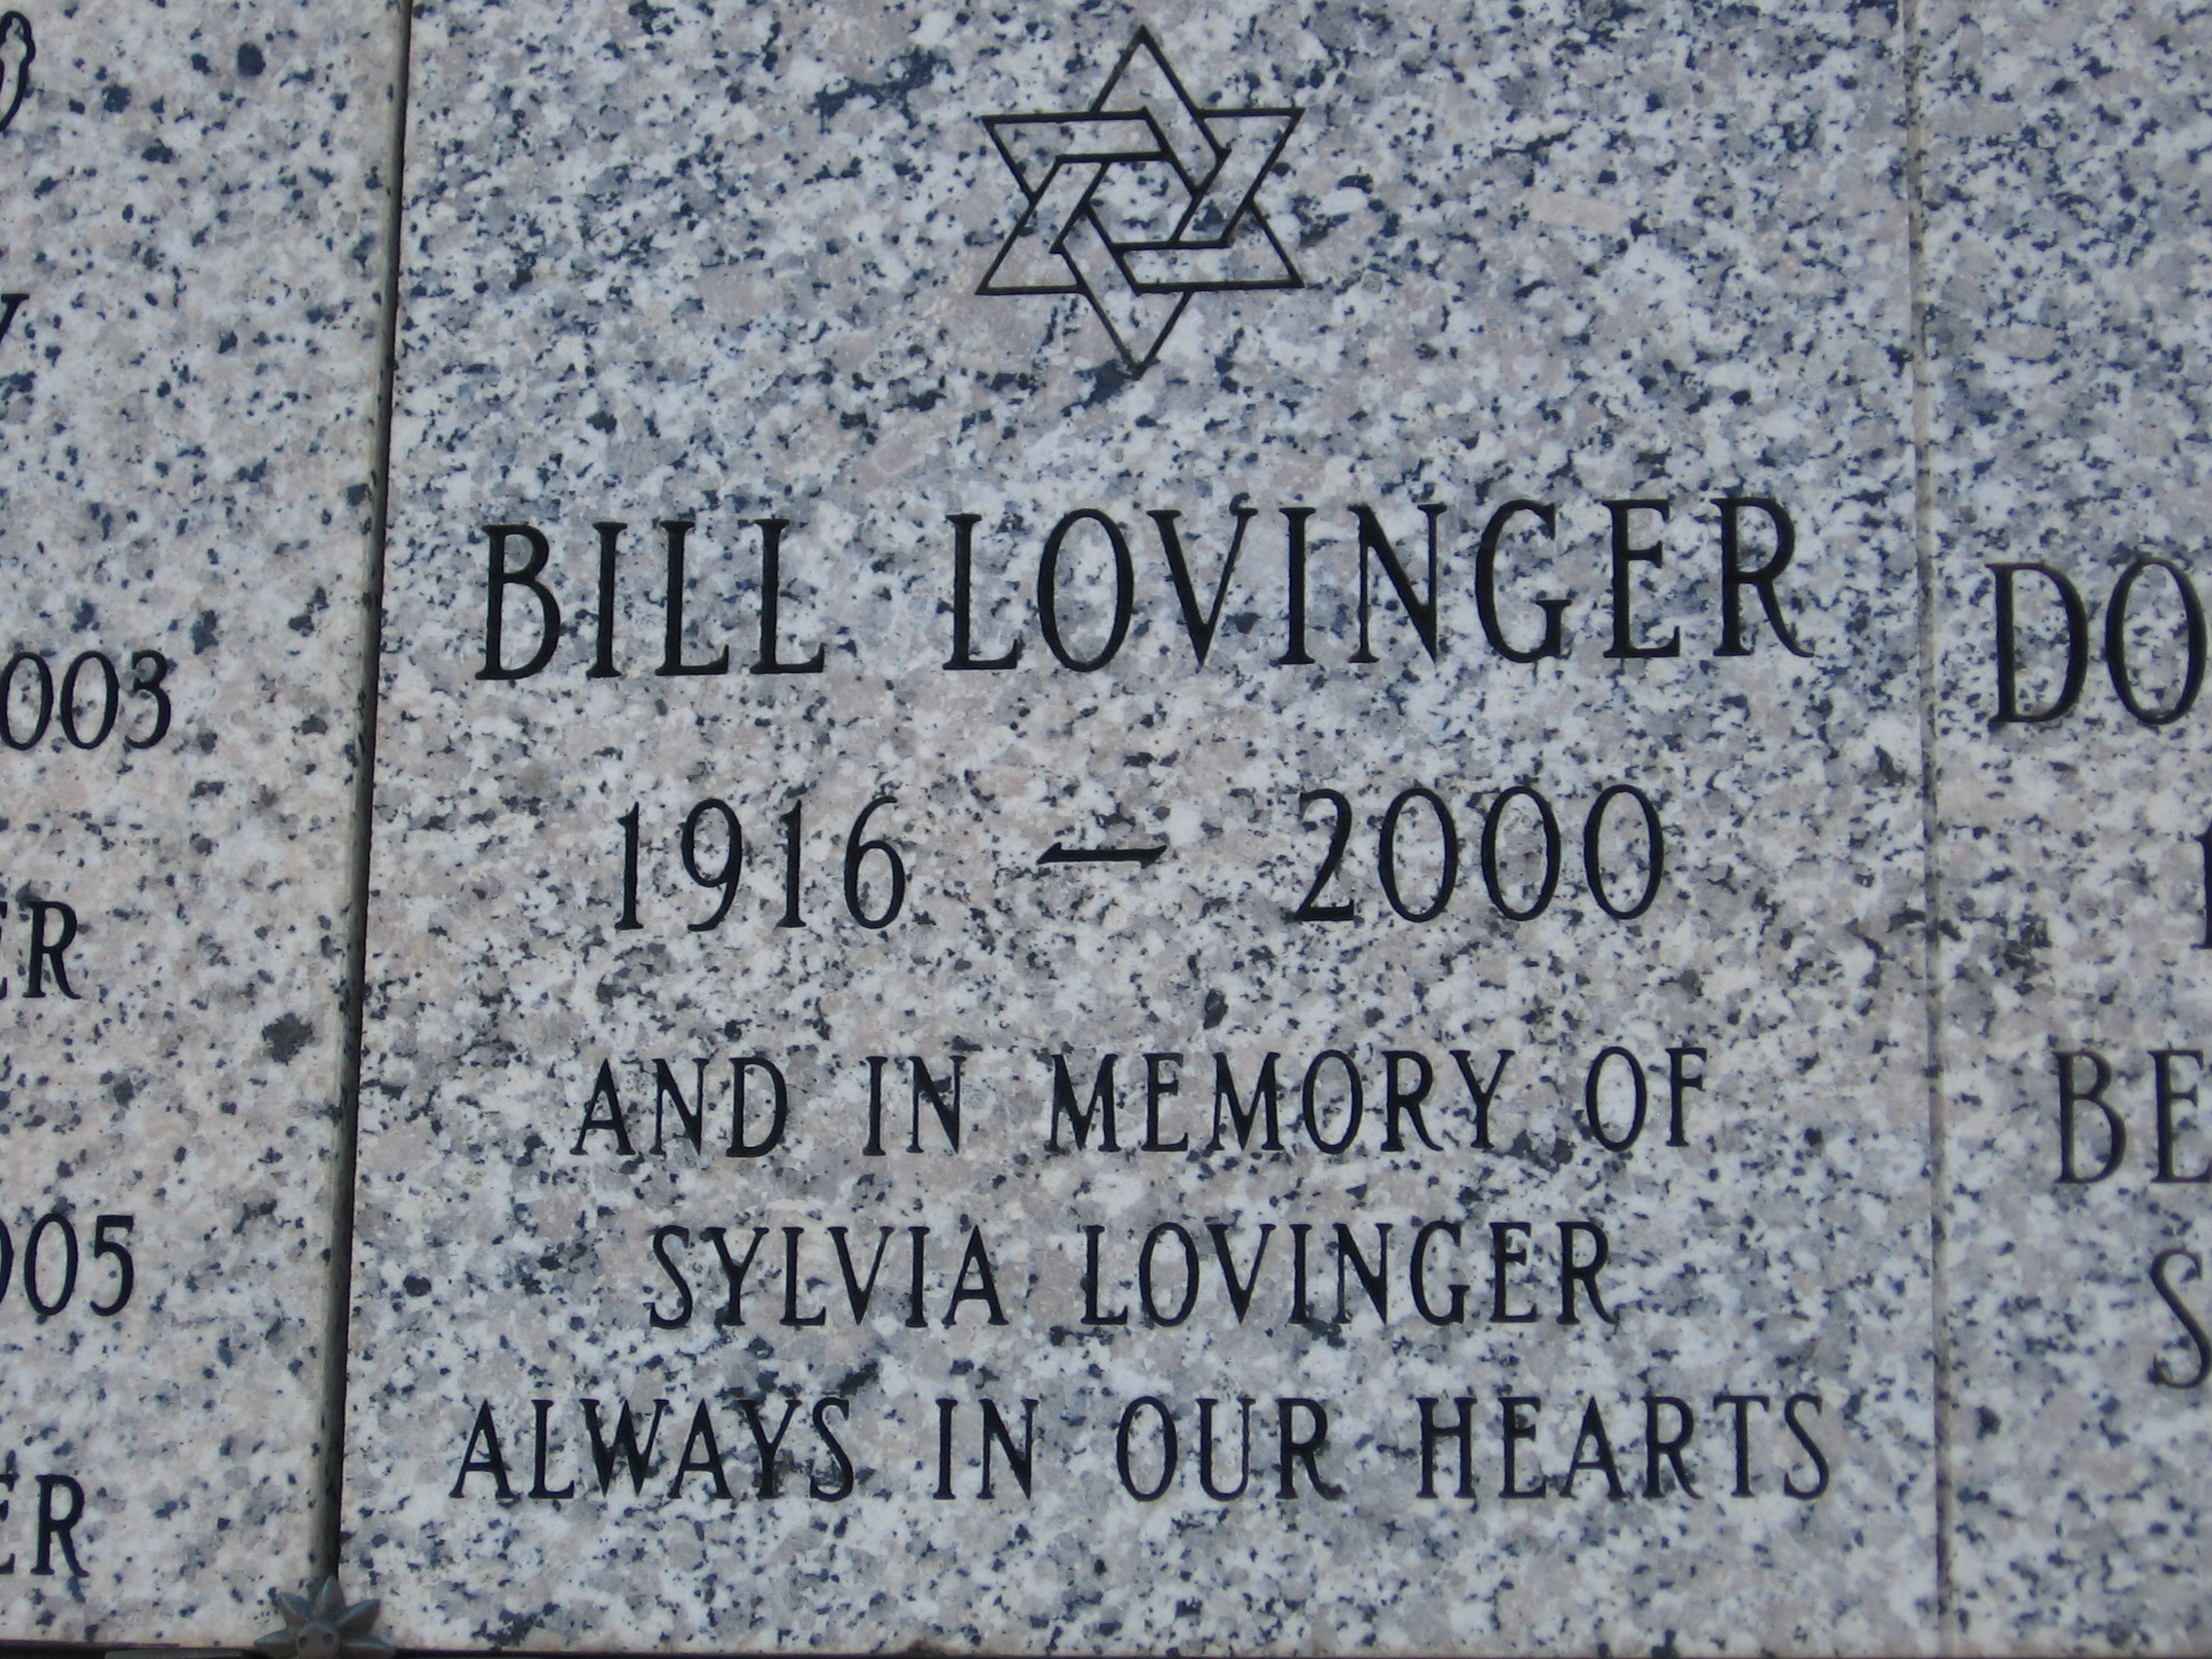 Bill Lovinger